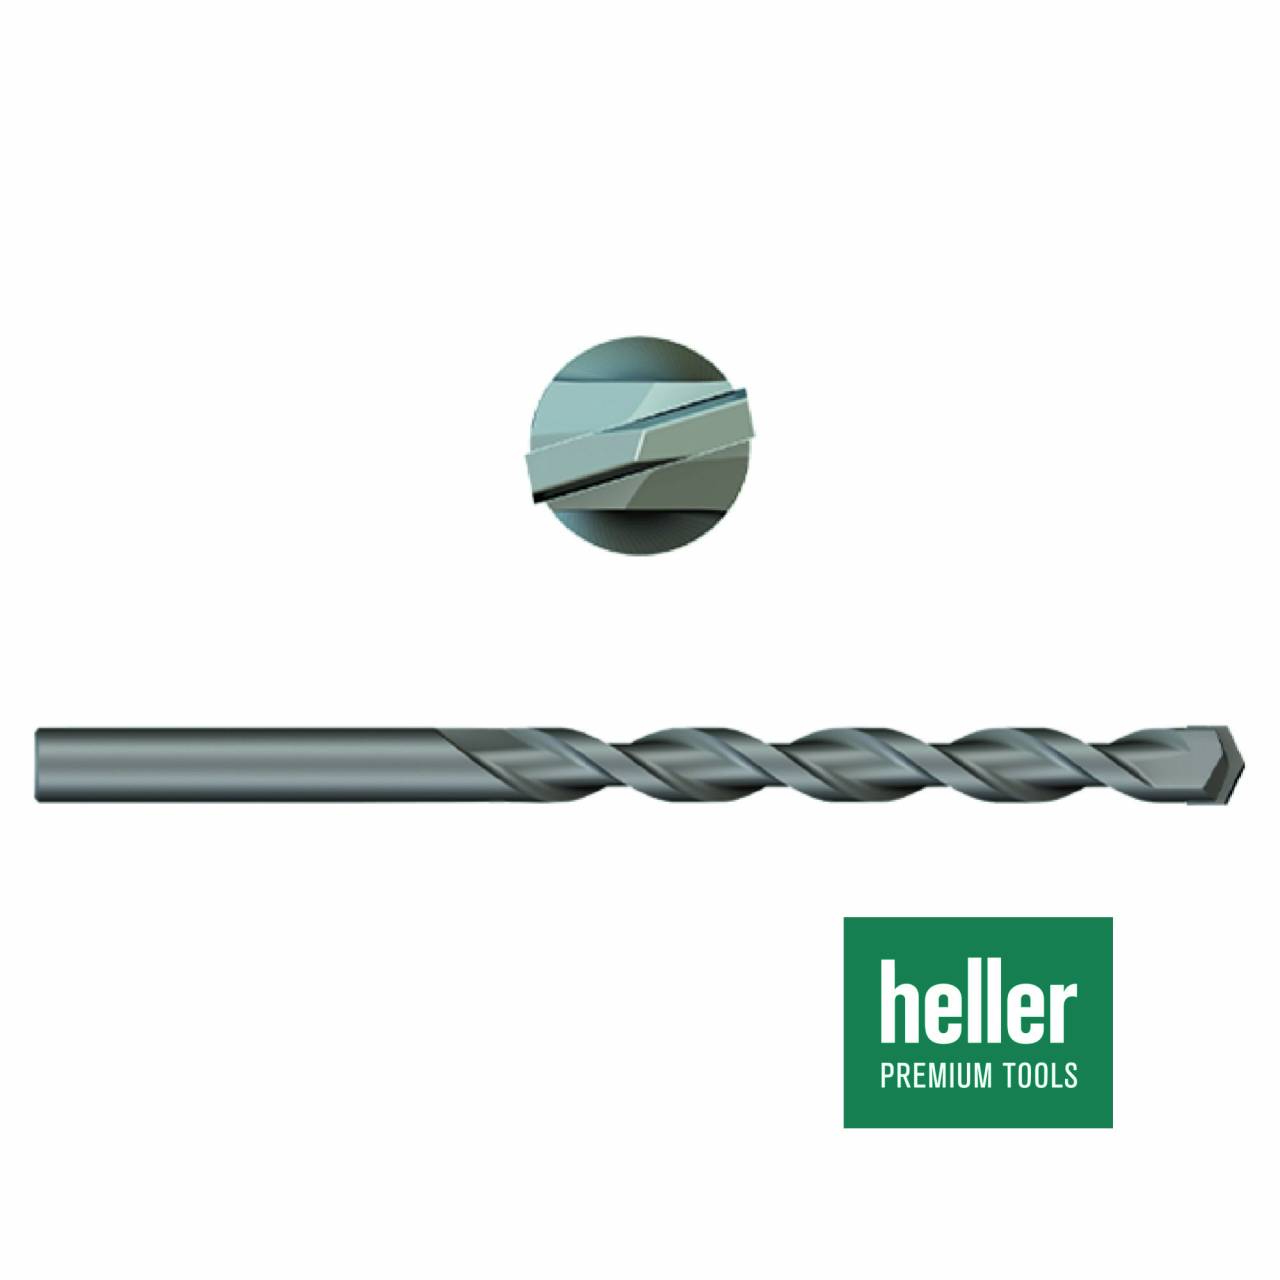 Betonbohrer 'Heller®' Ø 8 x 80 x 120 mm